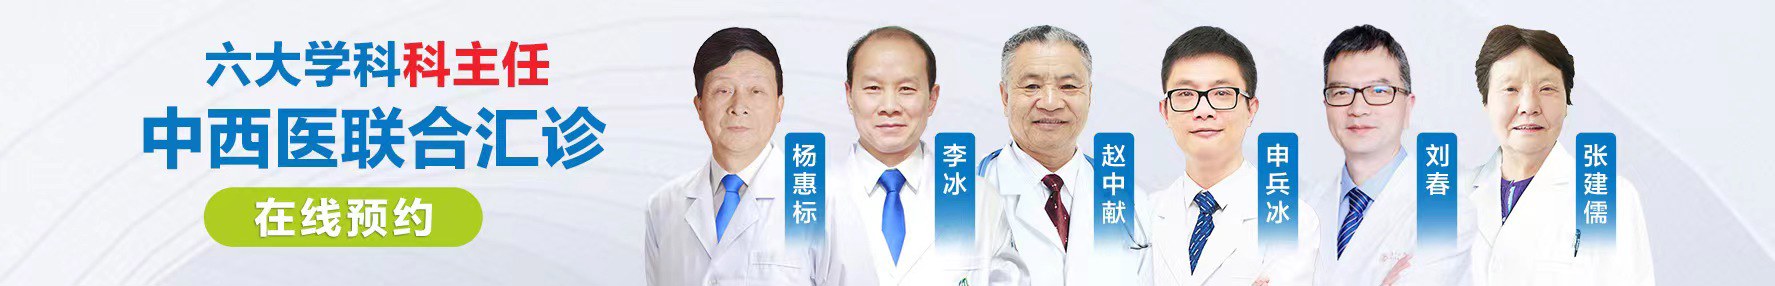 重庆中肾专科医院